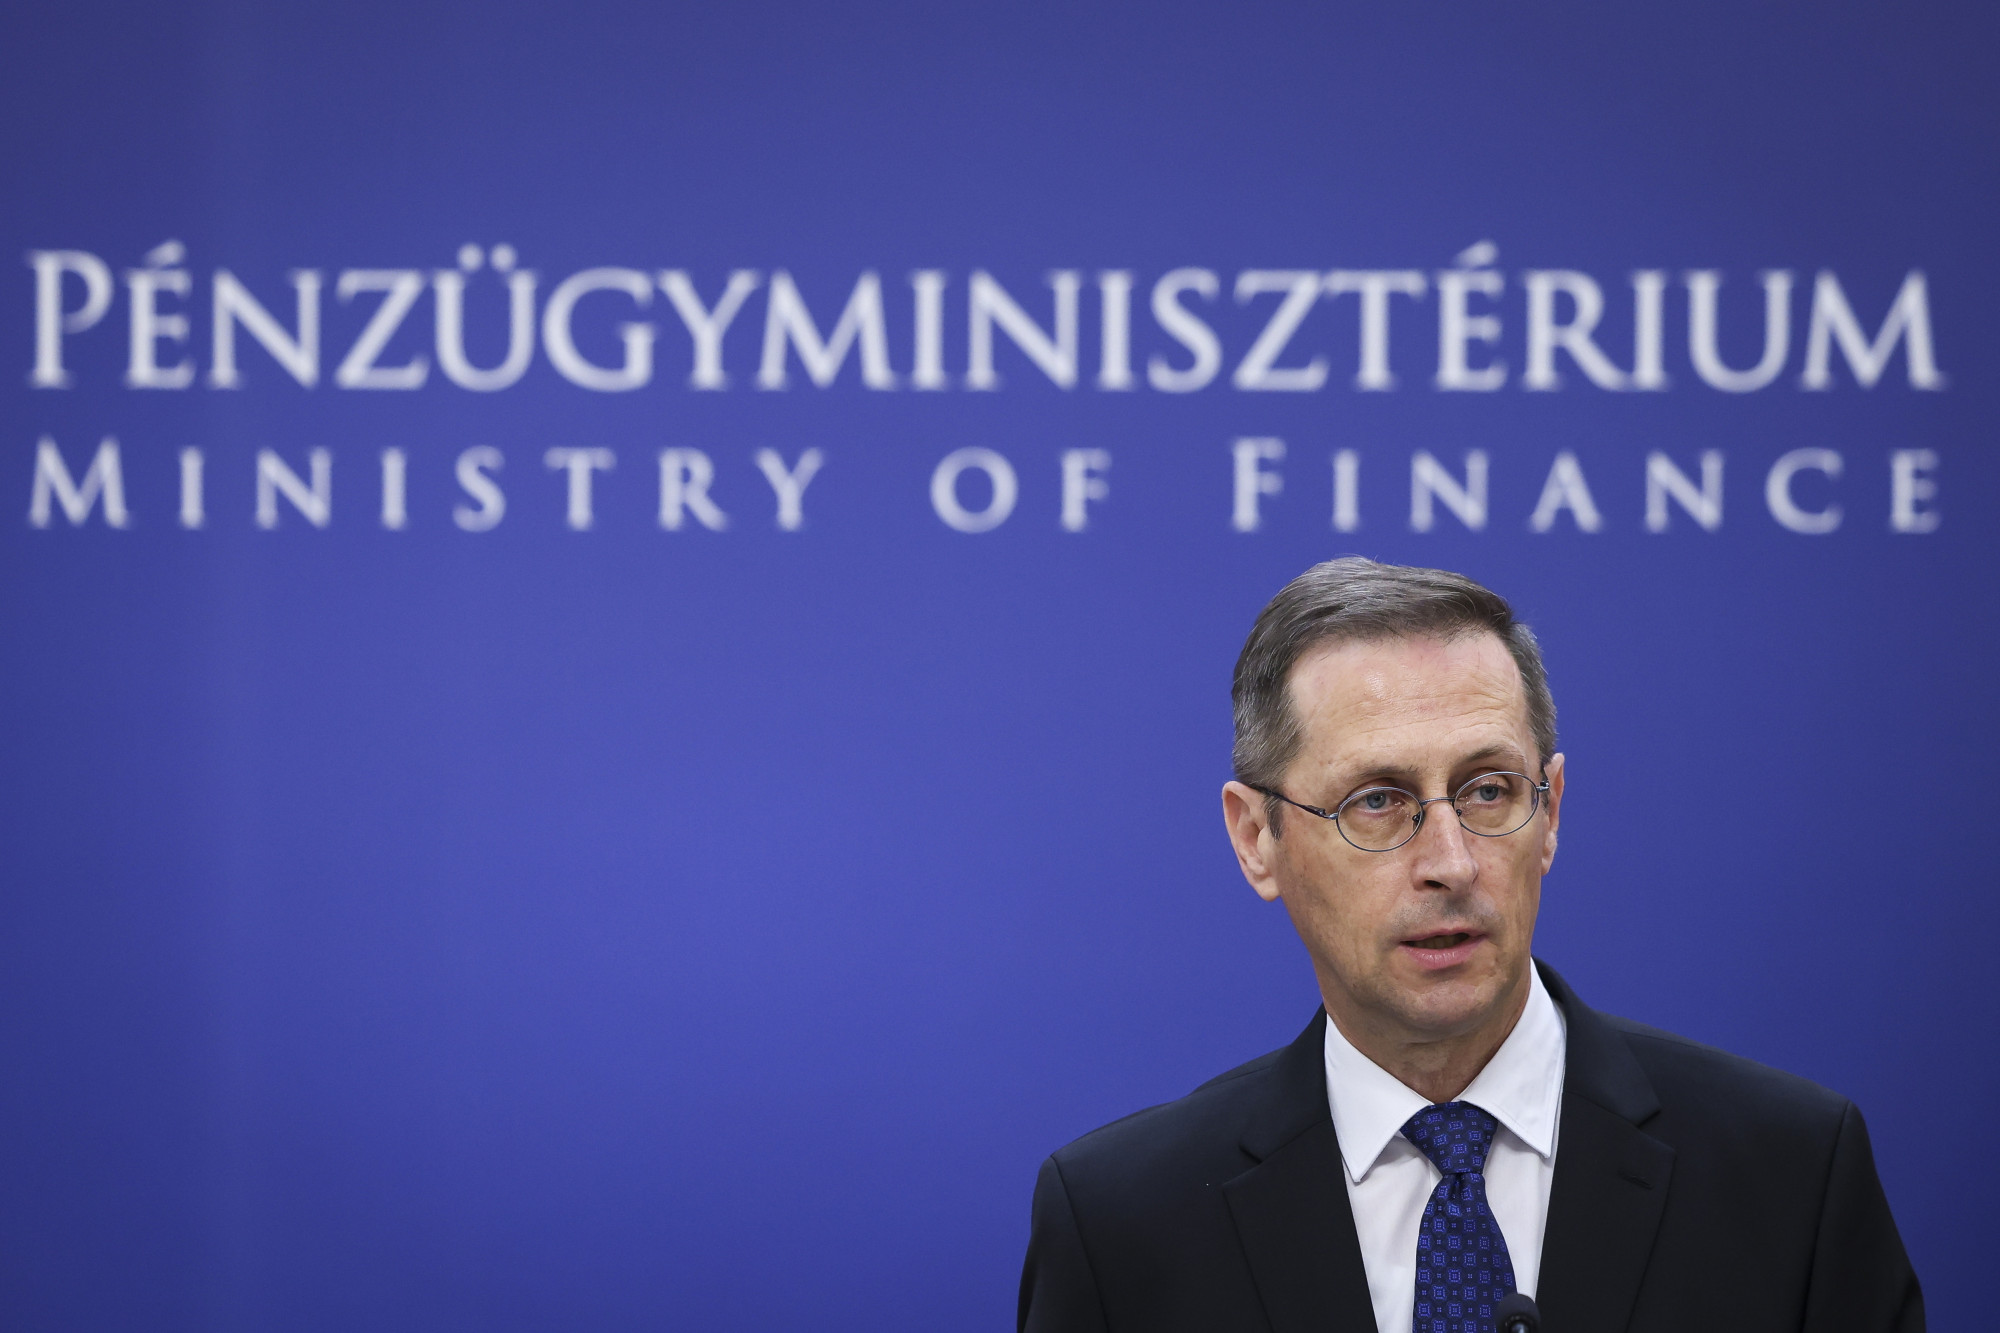 Varga Mihály elismerte, hogy eljárás indul Magyarország ellen a túl magas költségvetési hiány miatt